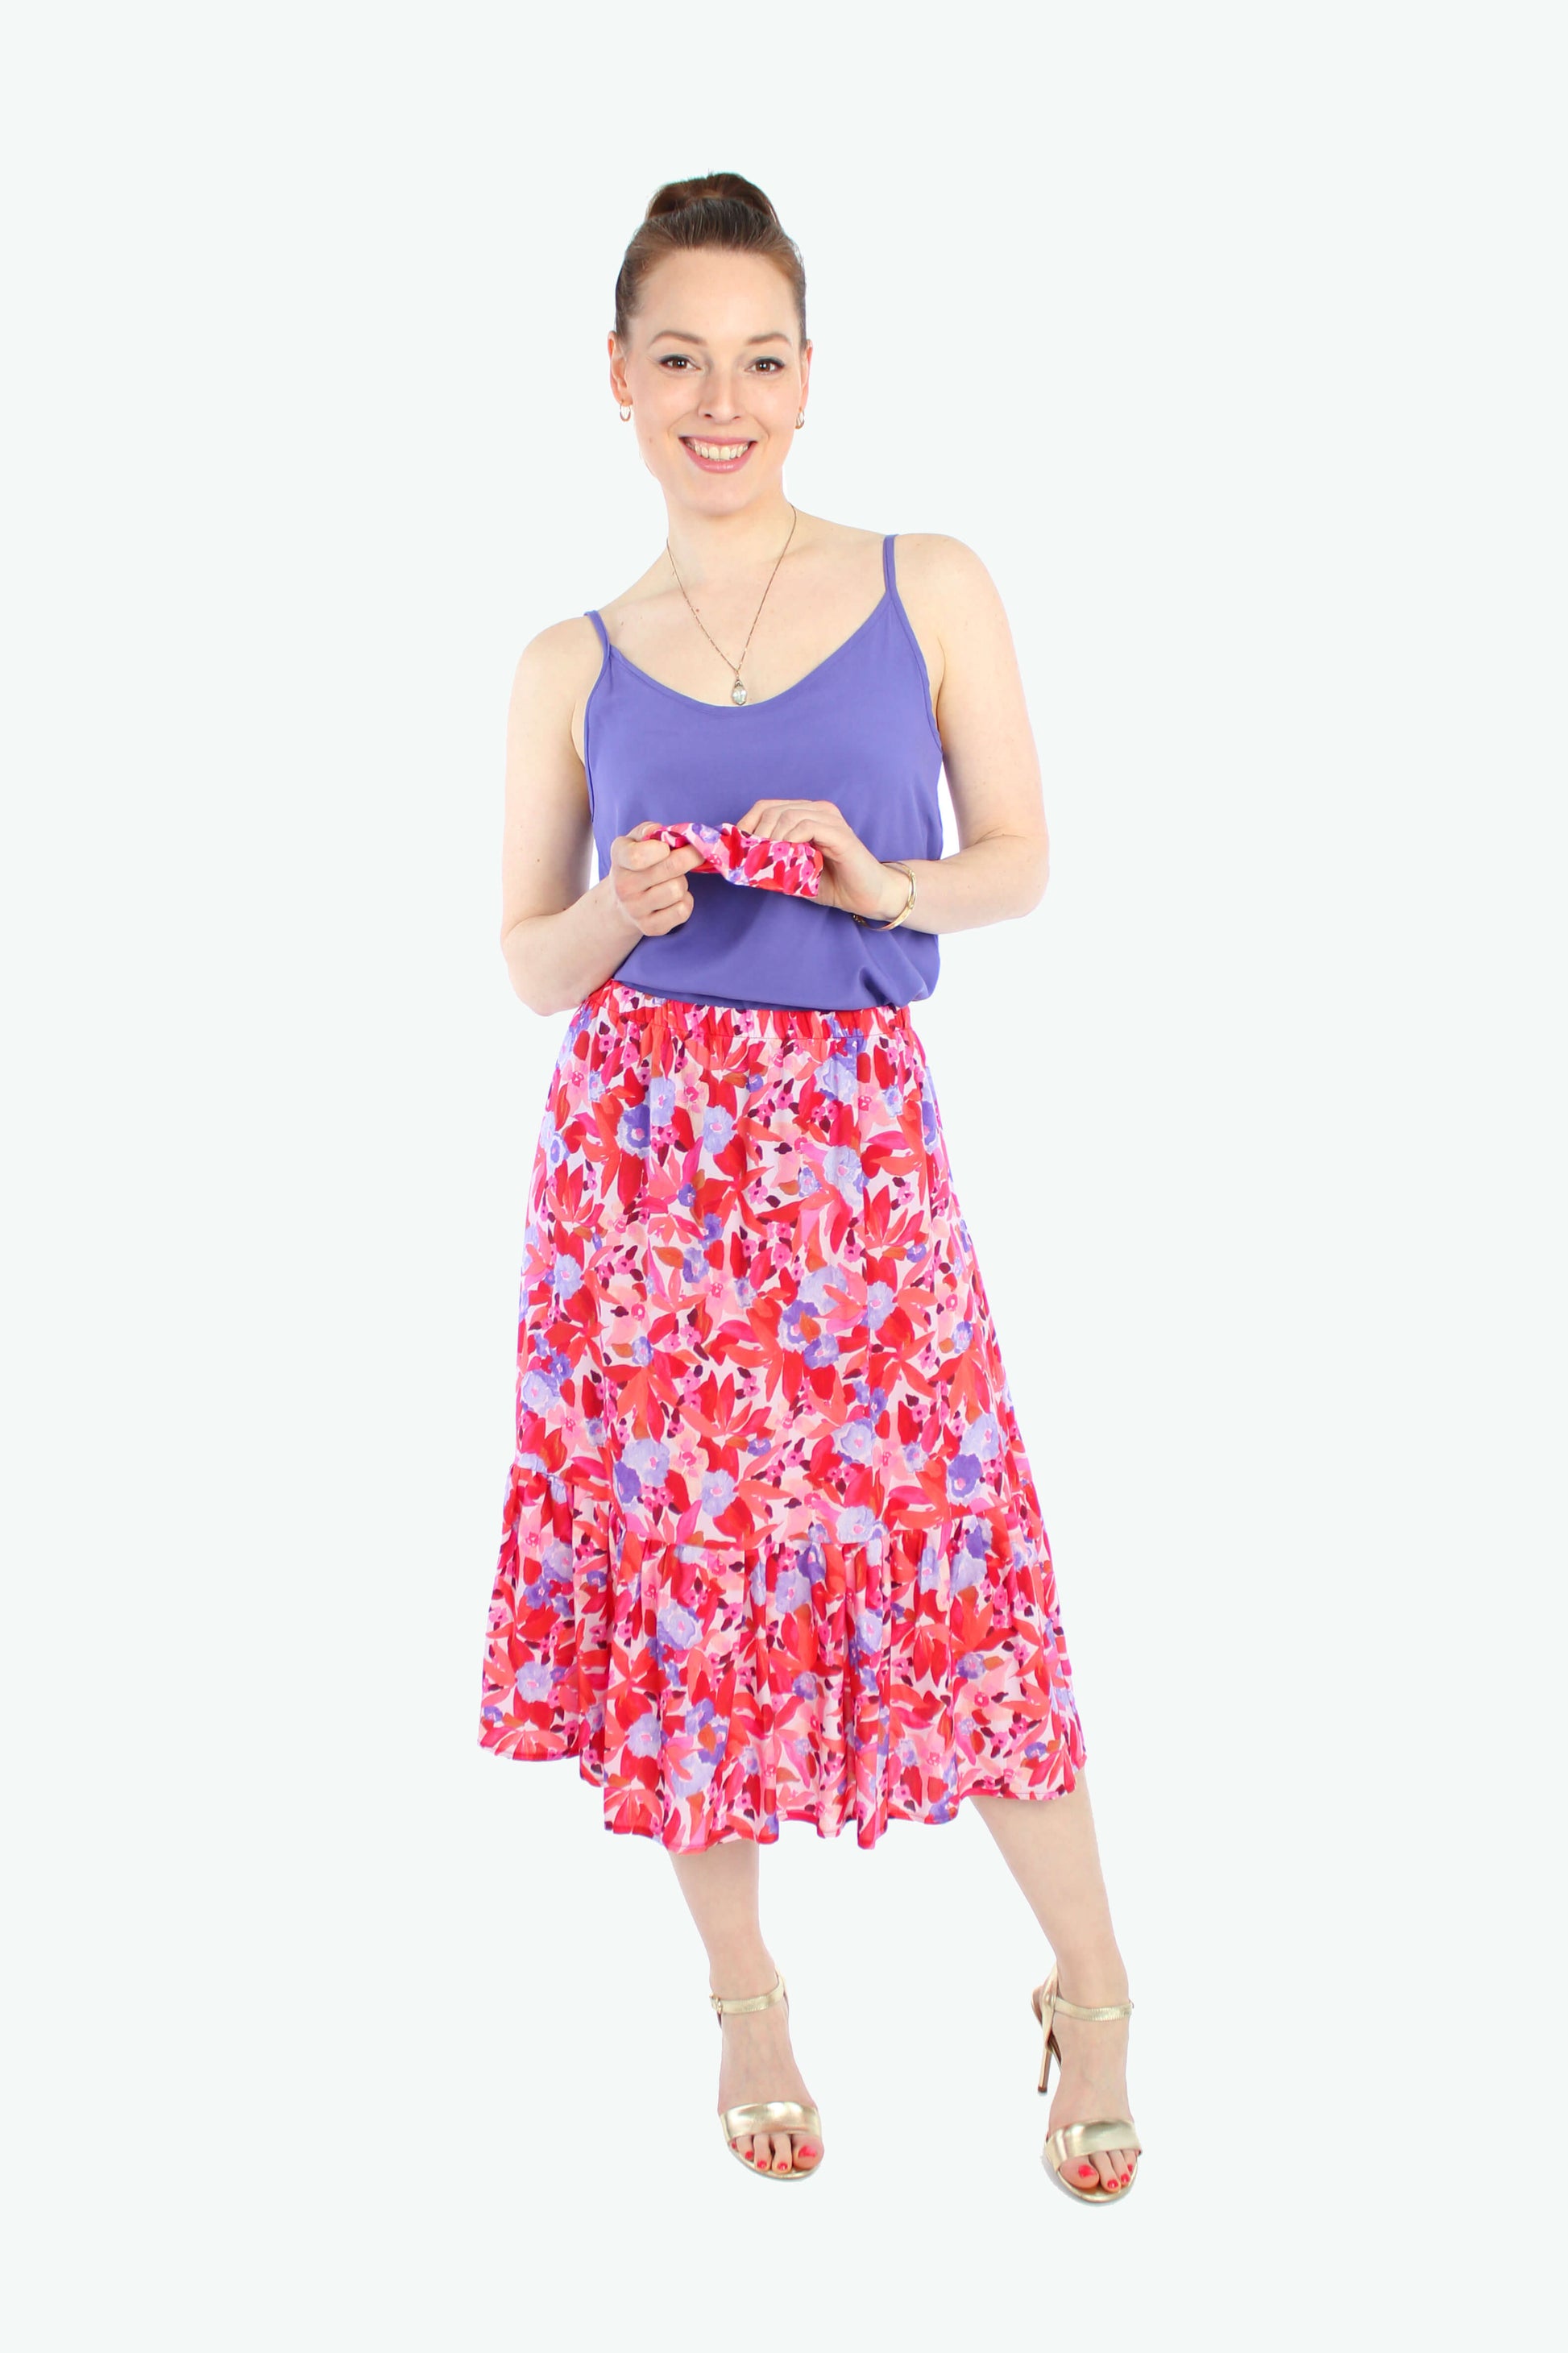 Frau, in einem sommerlichen Midirock mit Volant in rot, rosé, flieder geblümt aus leichtem Viskosestoff, dazu trägt sie ein Top mit Spaghettiträgern in lila.